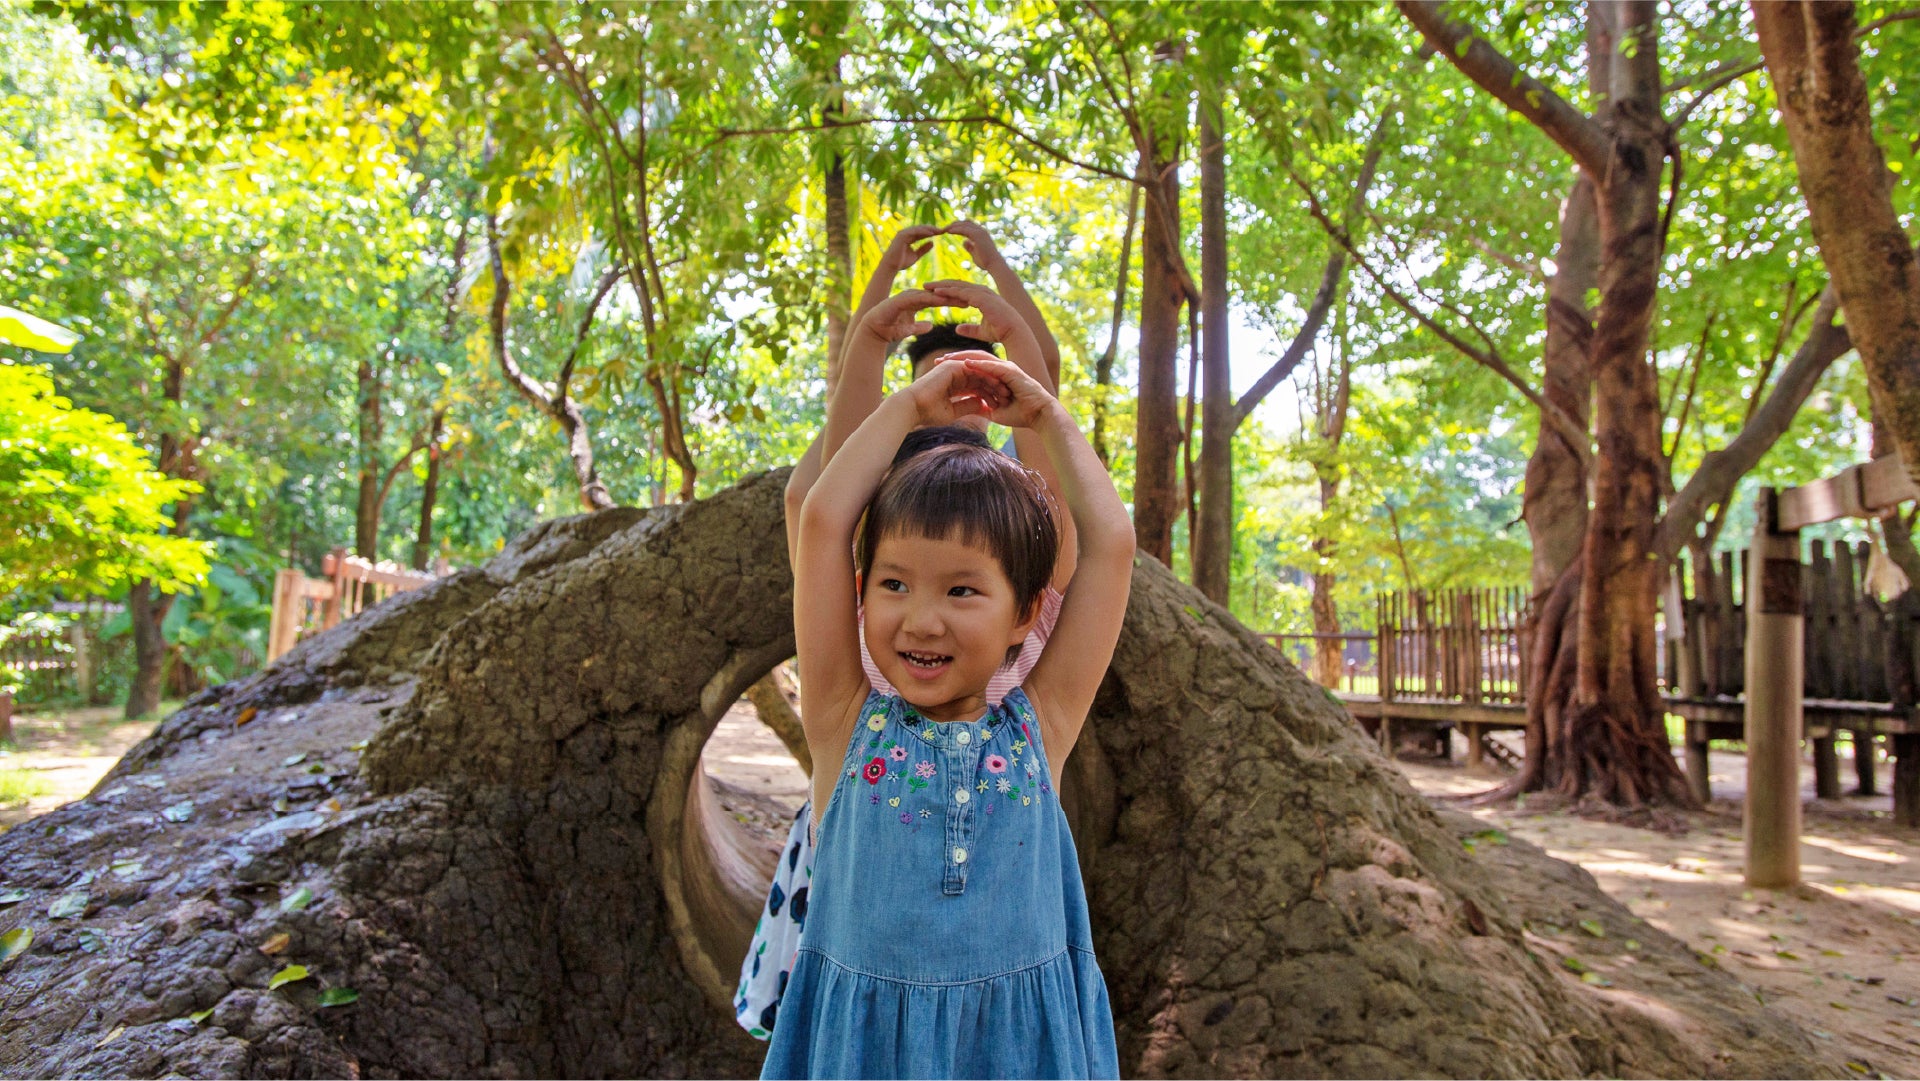 Image de jeunes enfants heureux dans les bois profitant de la nature et du soleil.